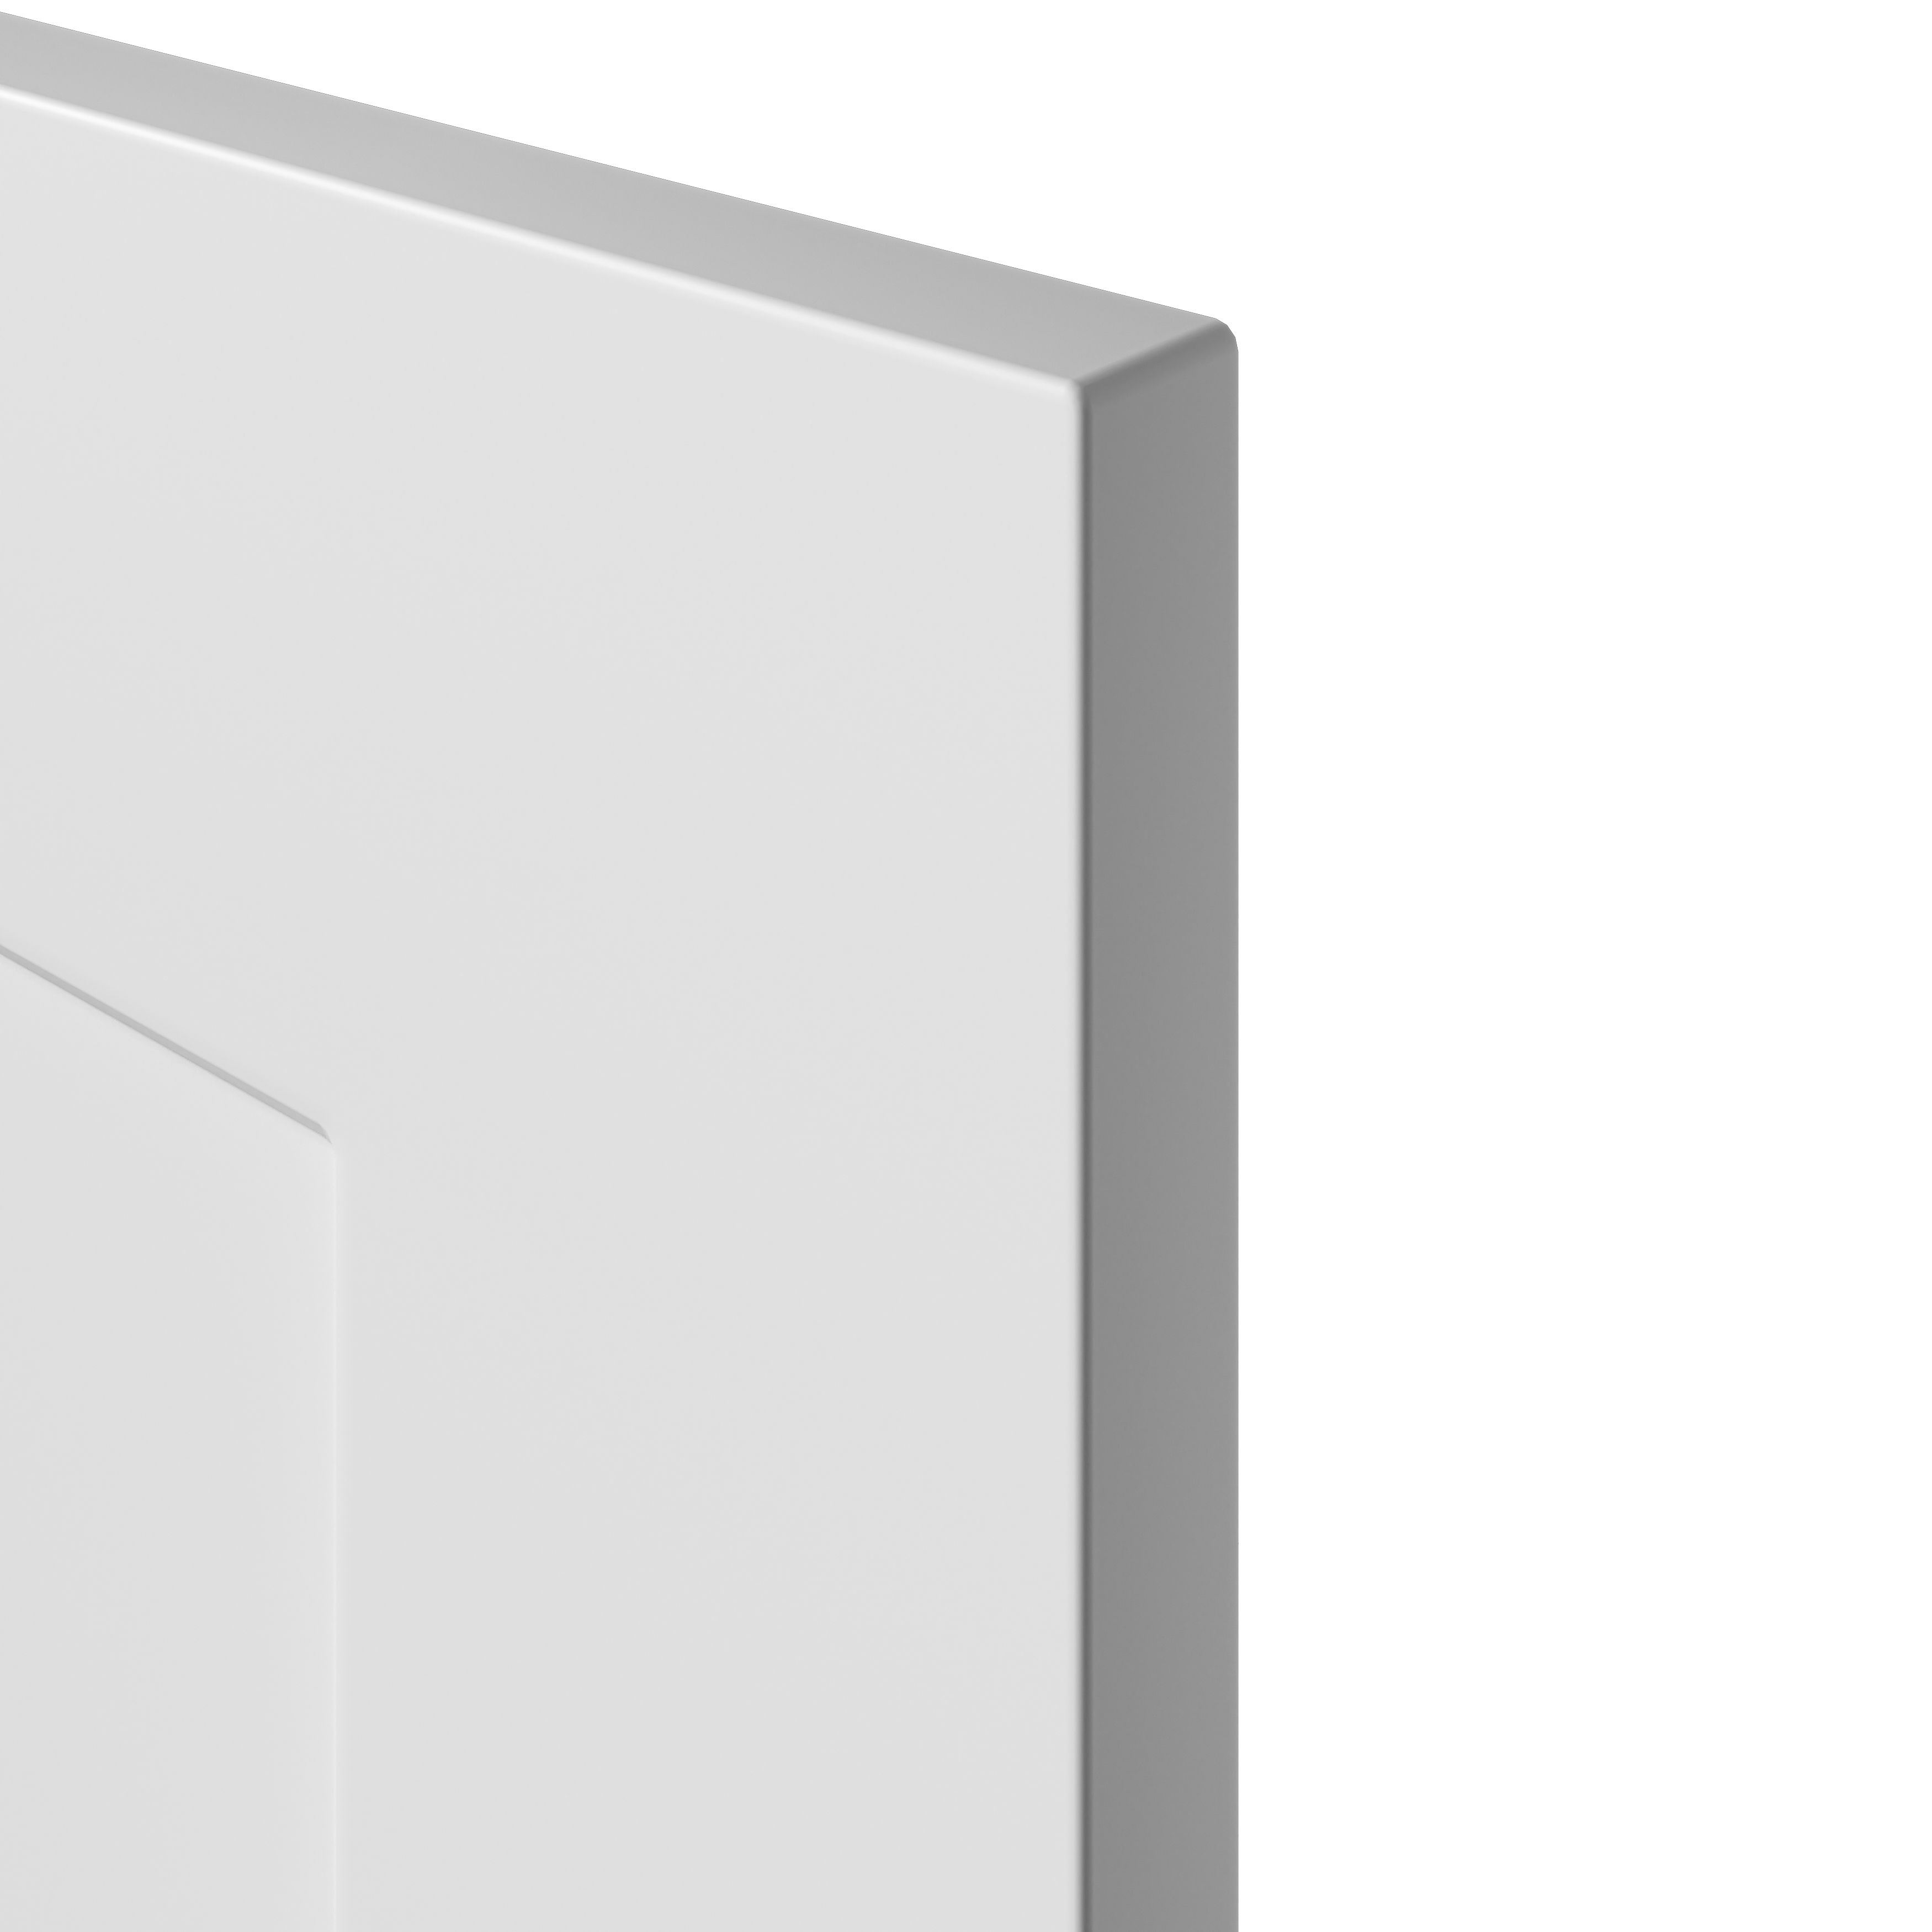 GoodHome Artemisia Matt white Drawer front, bridging door & bi fold door, (W)800mm (H)340mm (T)18mm